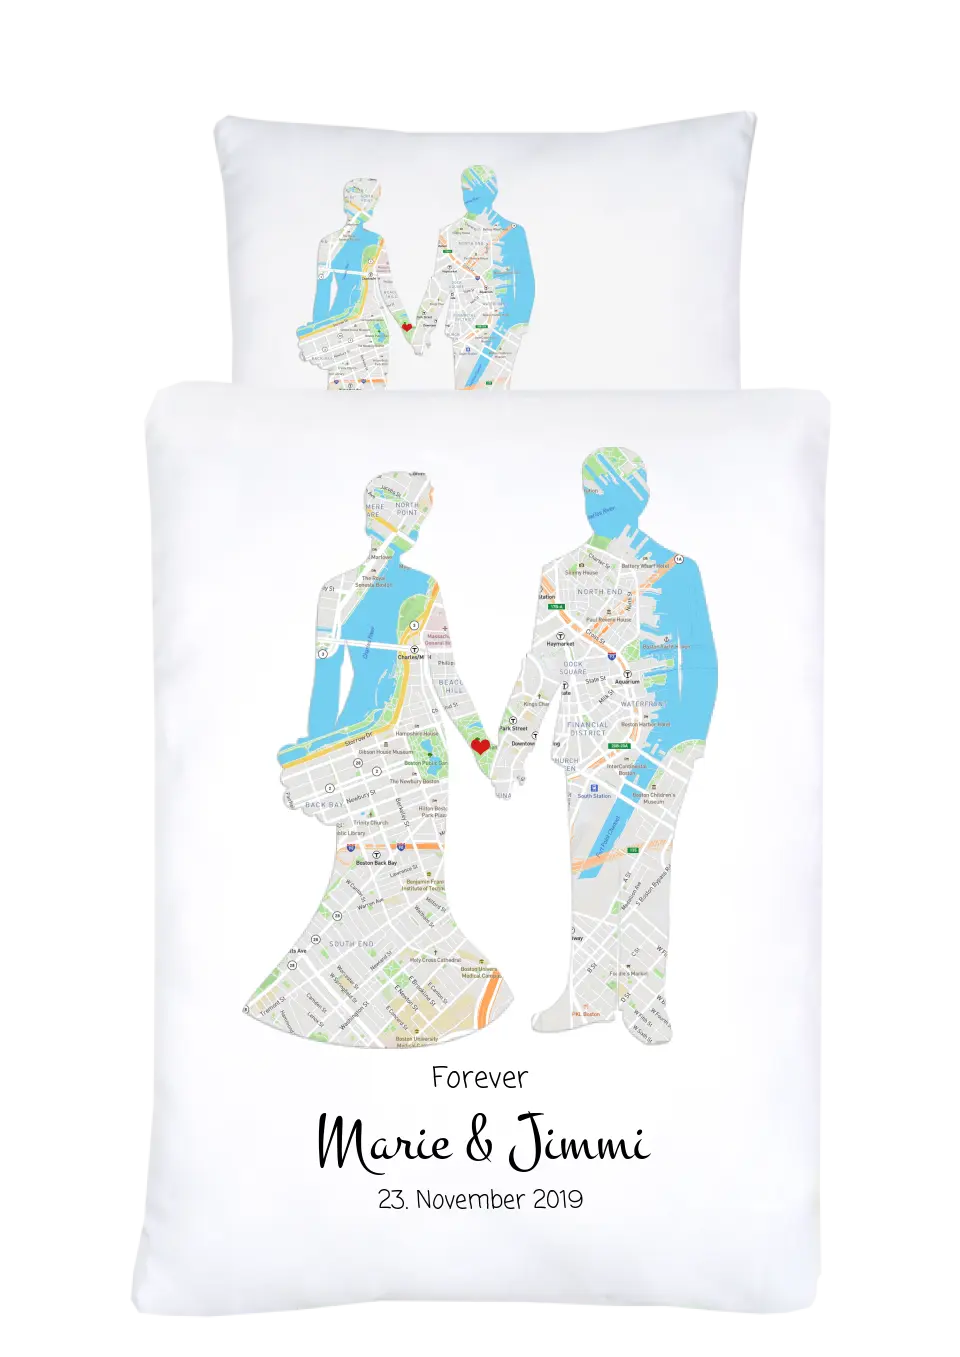 Hochzeitsgeschenk Just Married | Personalisierter Bettbezug Brautpaar Motiv | Geschenk zur Hochzeit, Valentin, Liebe im Koordinaten Stadtkarte Design